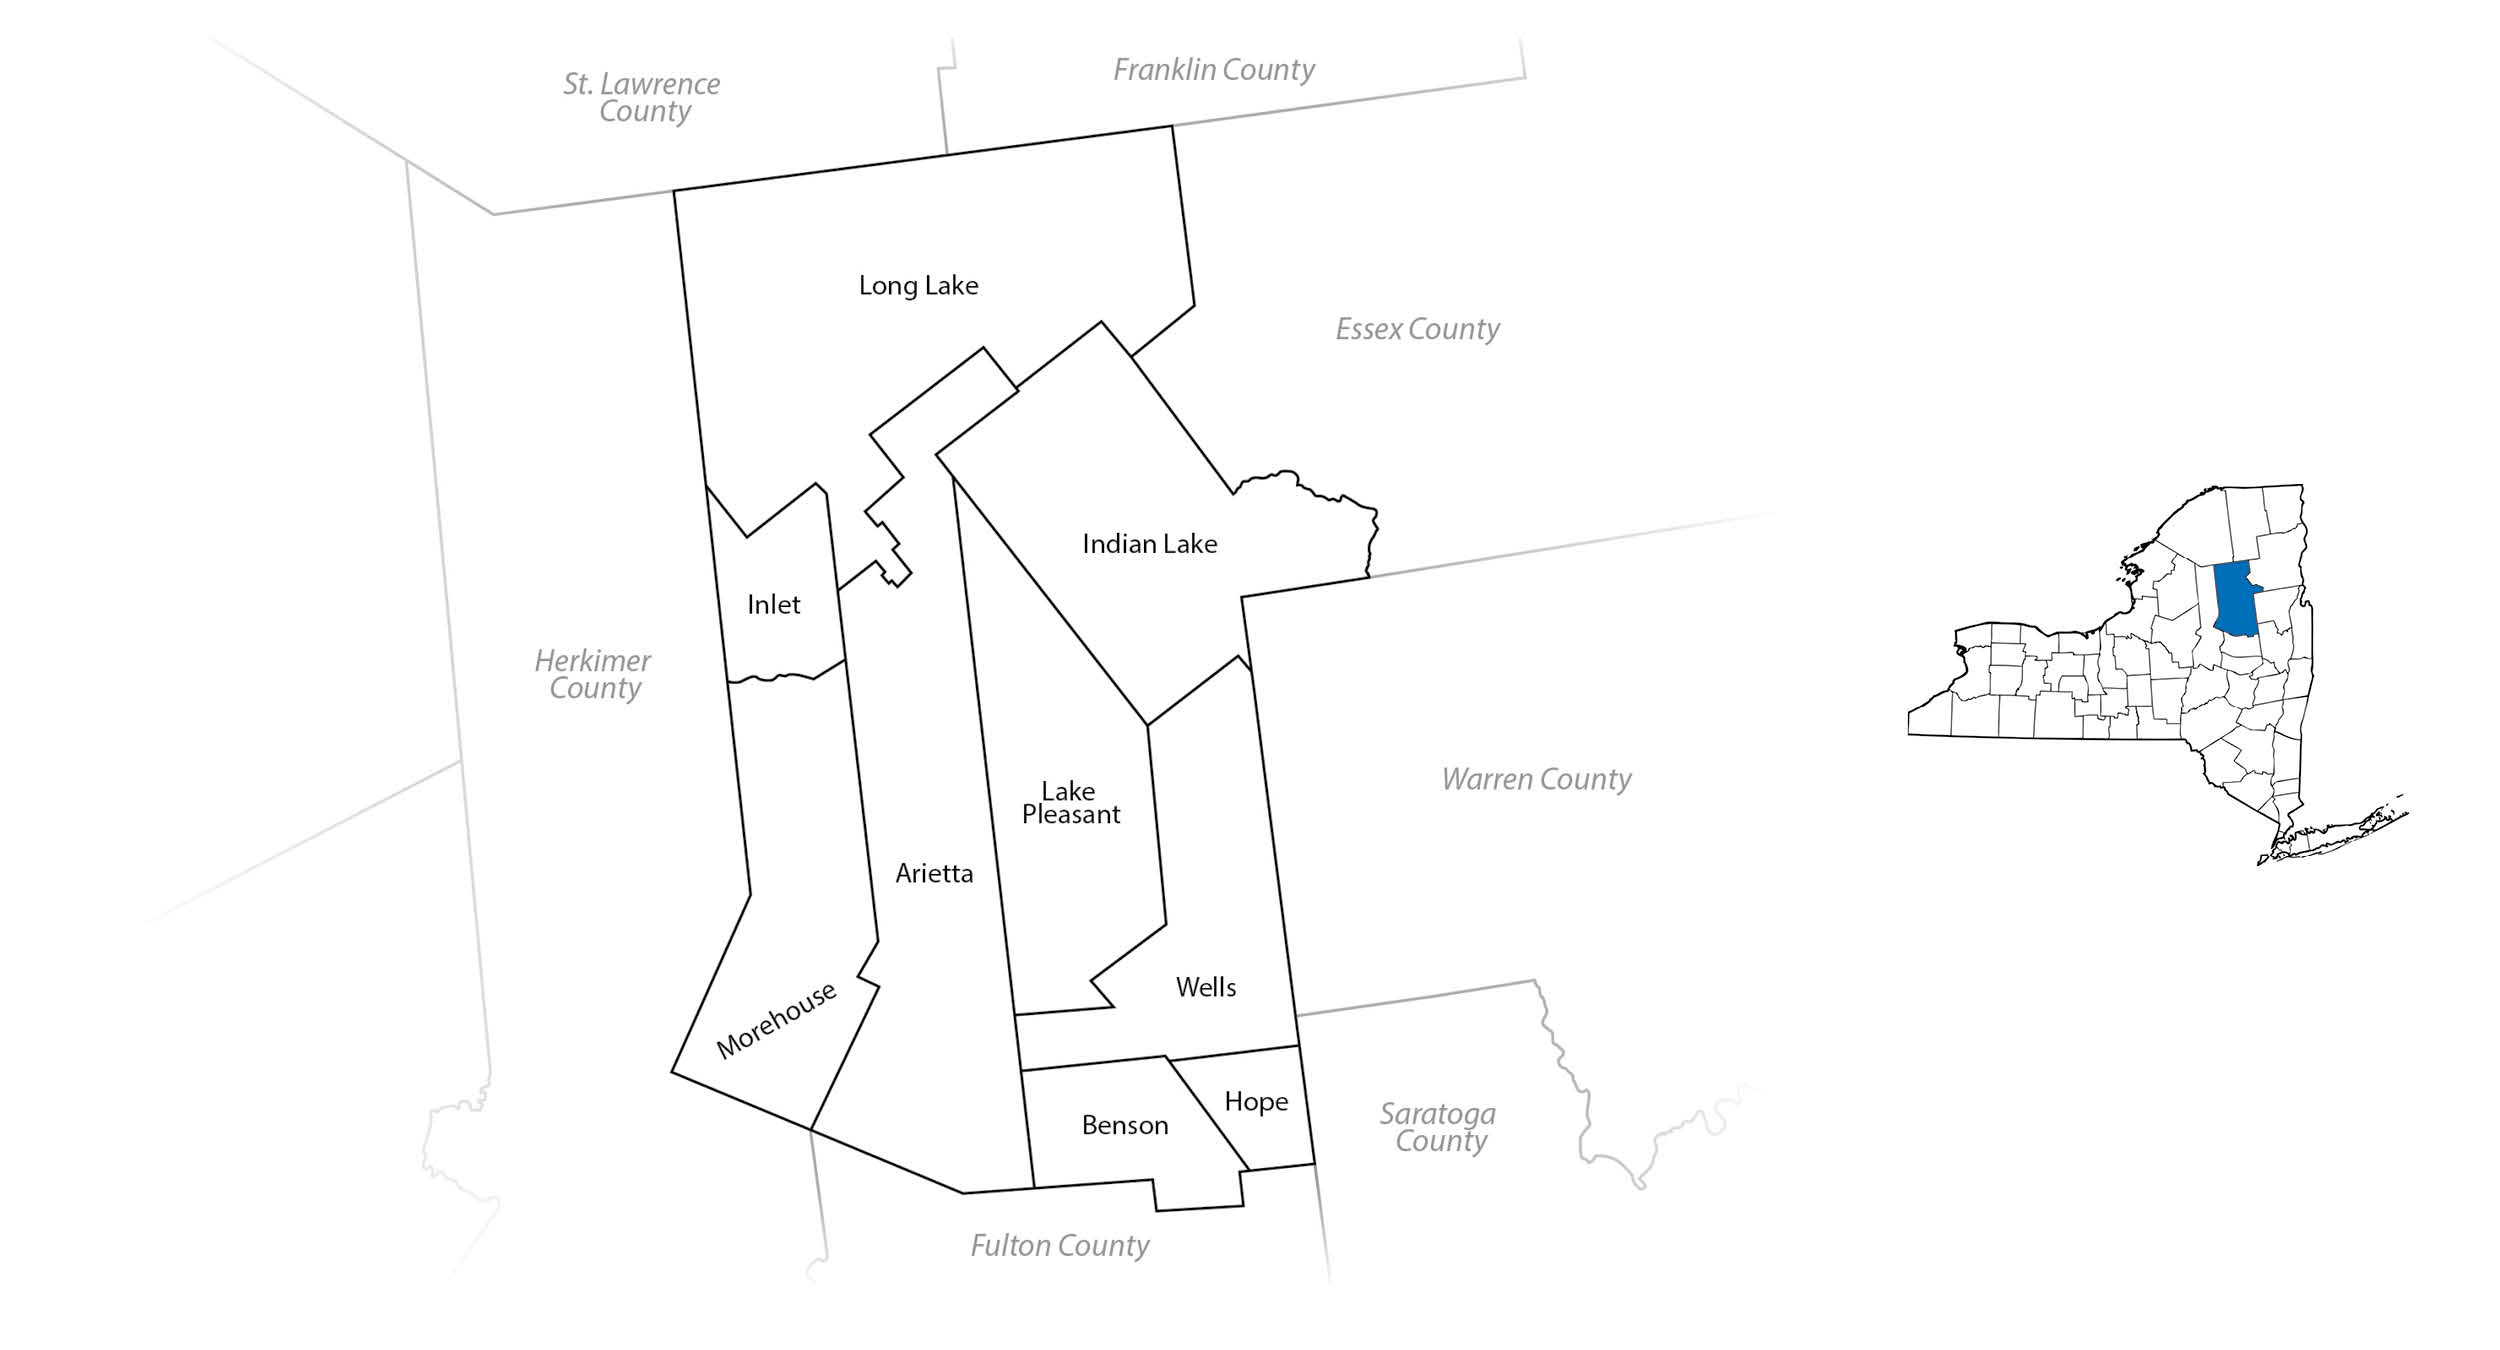 Hamilton County Map